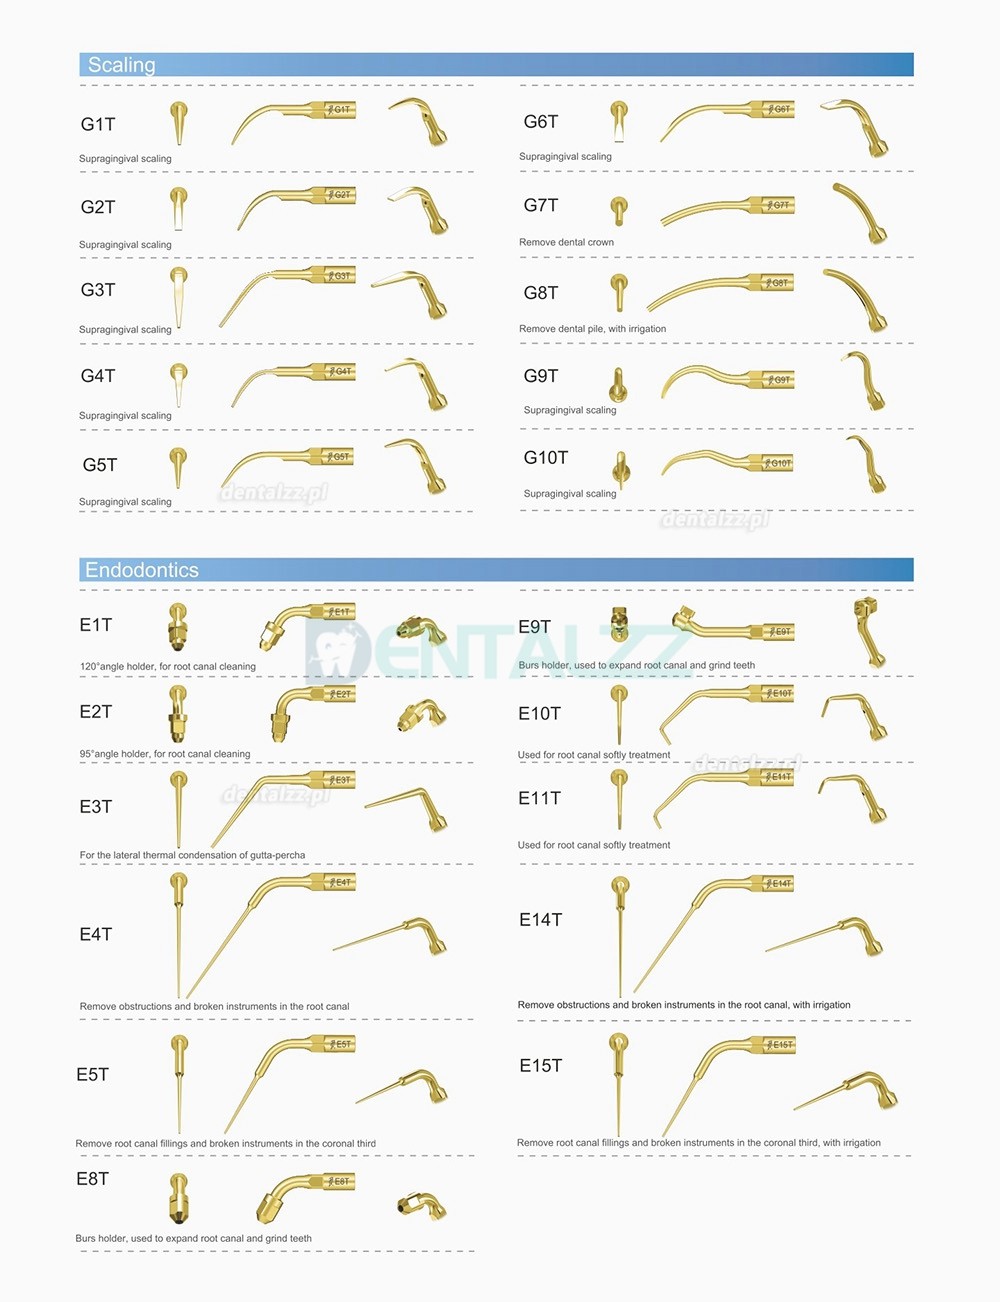 10 Sztuk Woodpecker DTE Końcówka do skalera Endodontyczny E1 E2 E3 E3D E4 E4D E5 E5D E8 E9 E10D E11 E11D E14 Kompatybilny z EMS